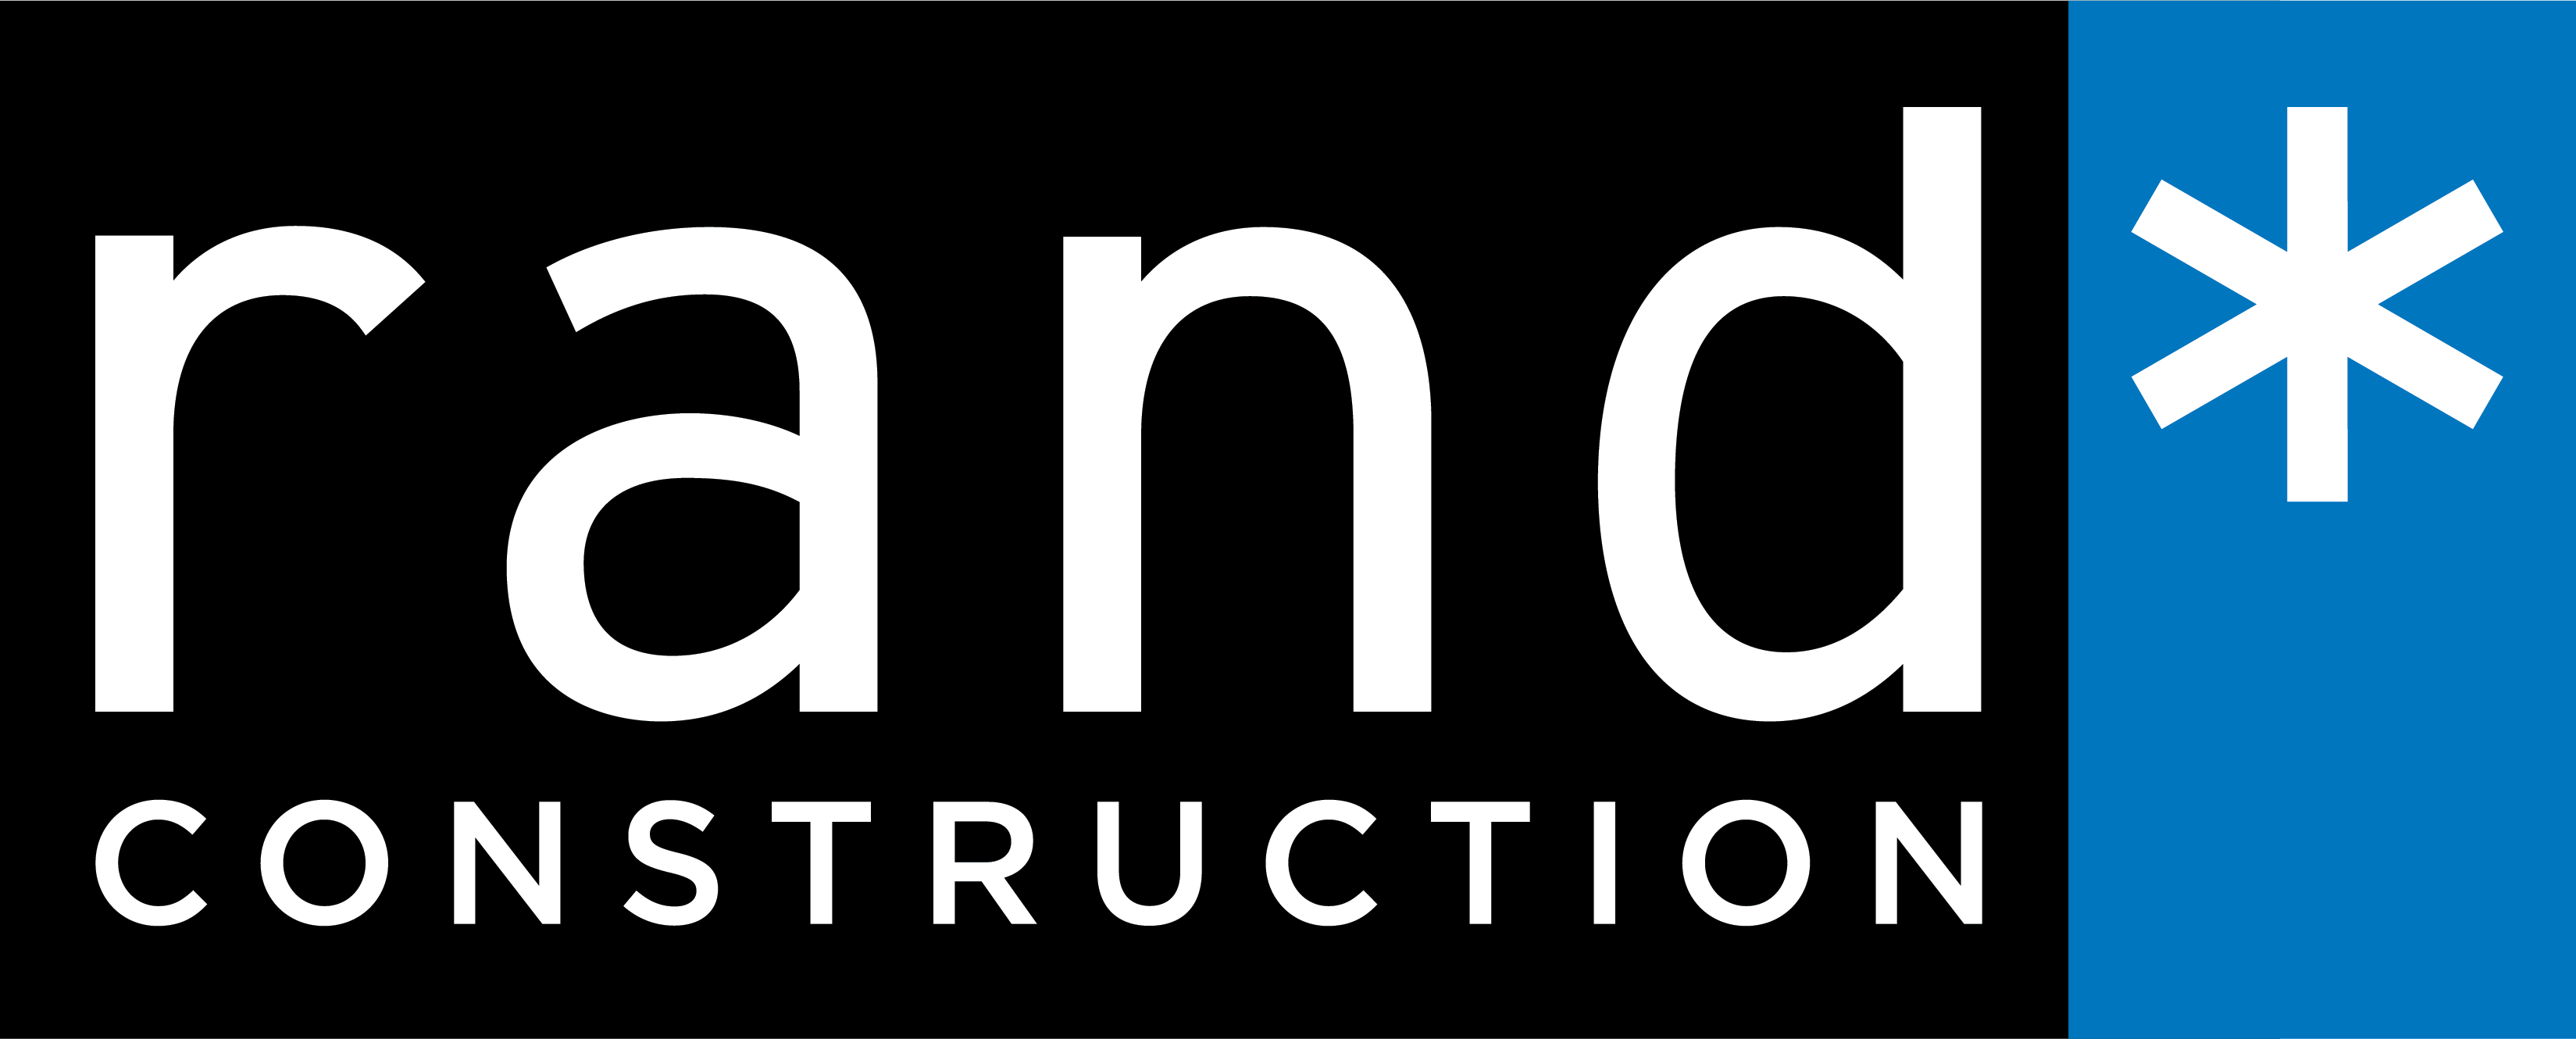 rand construction corporation Company Logo